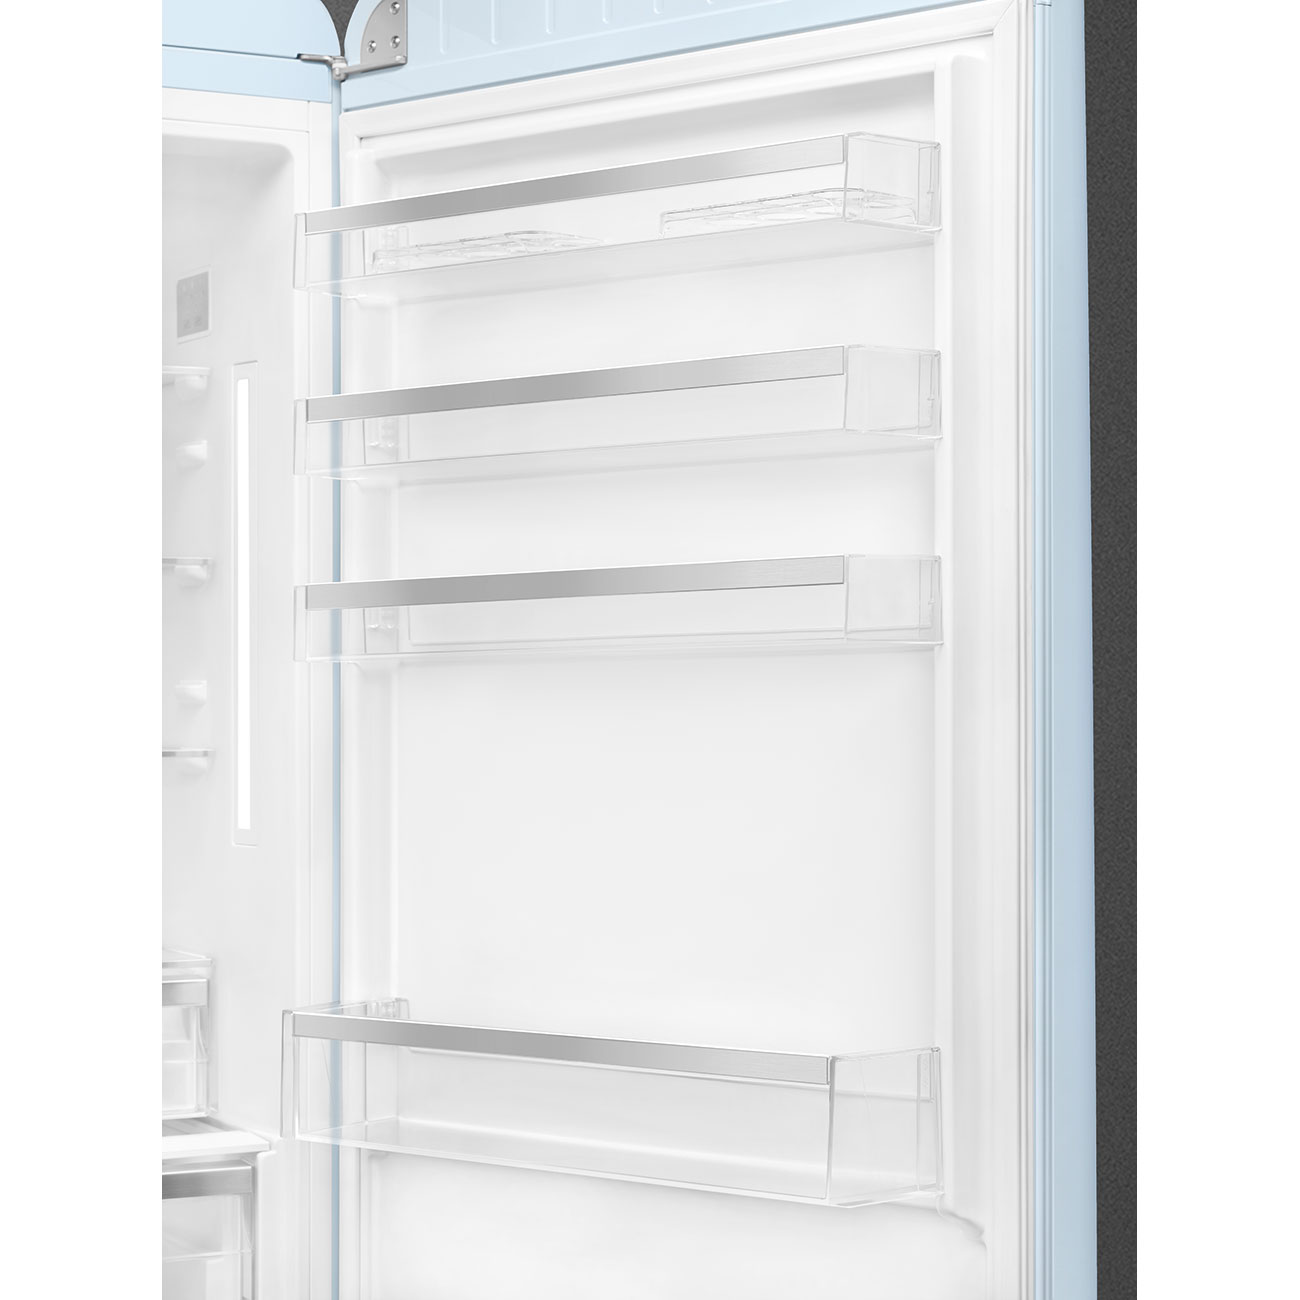 Pastel blue refrigerator - Smeg_8